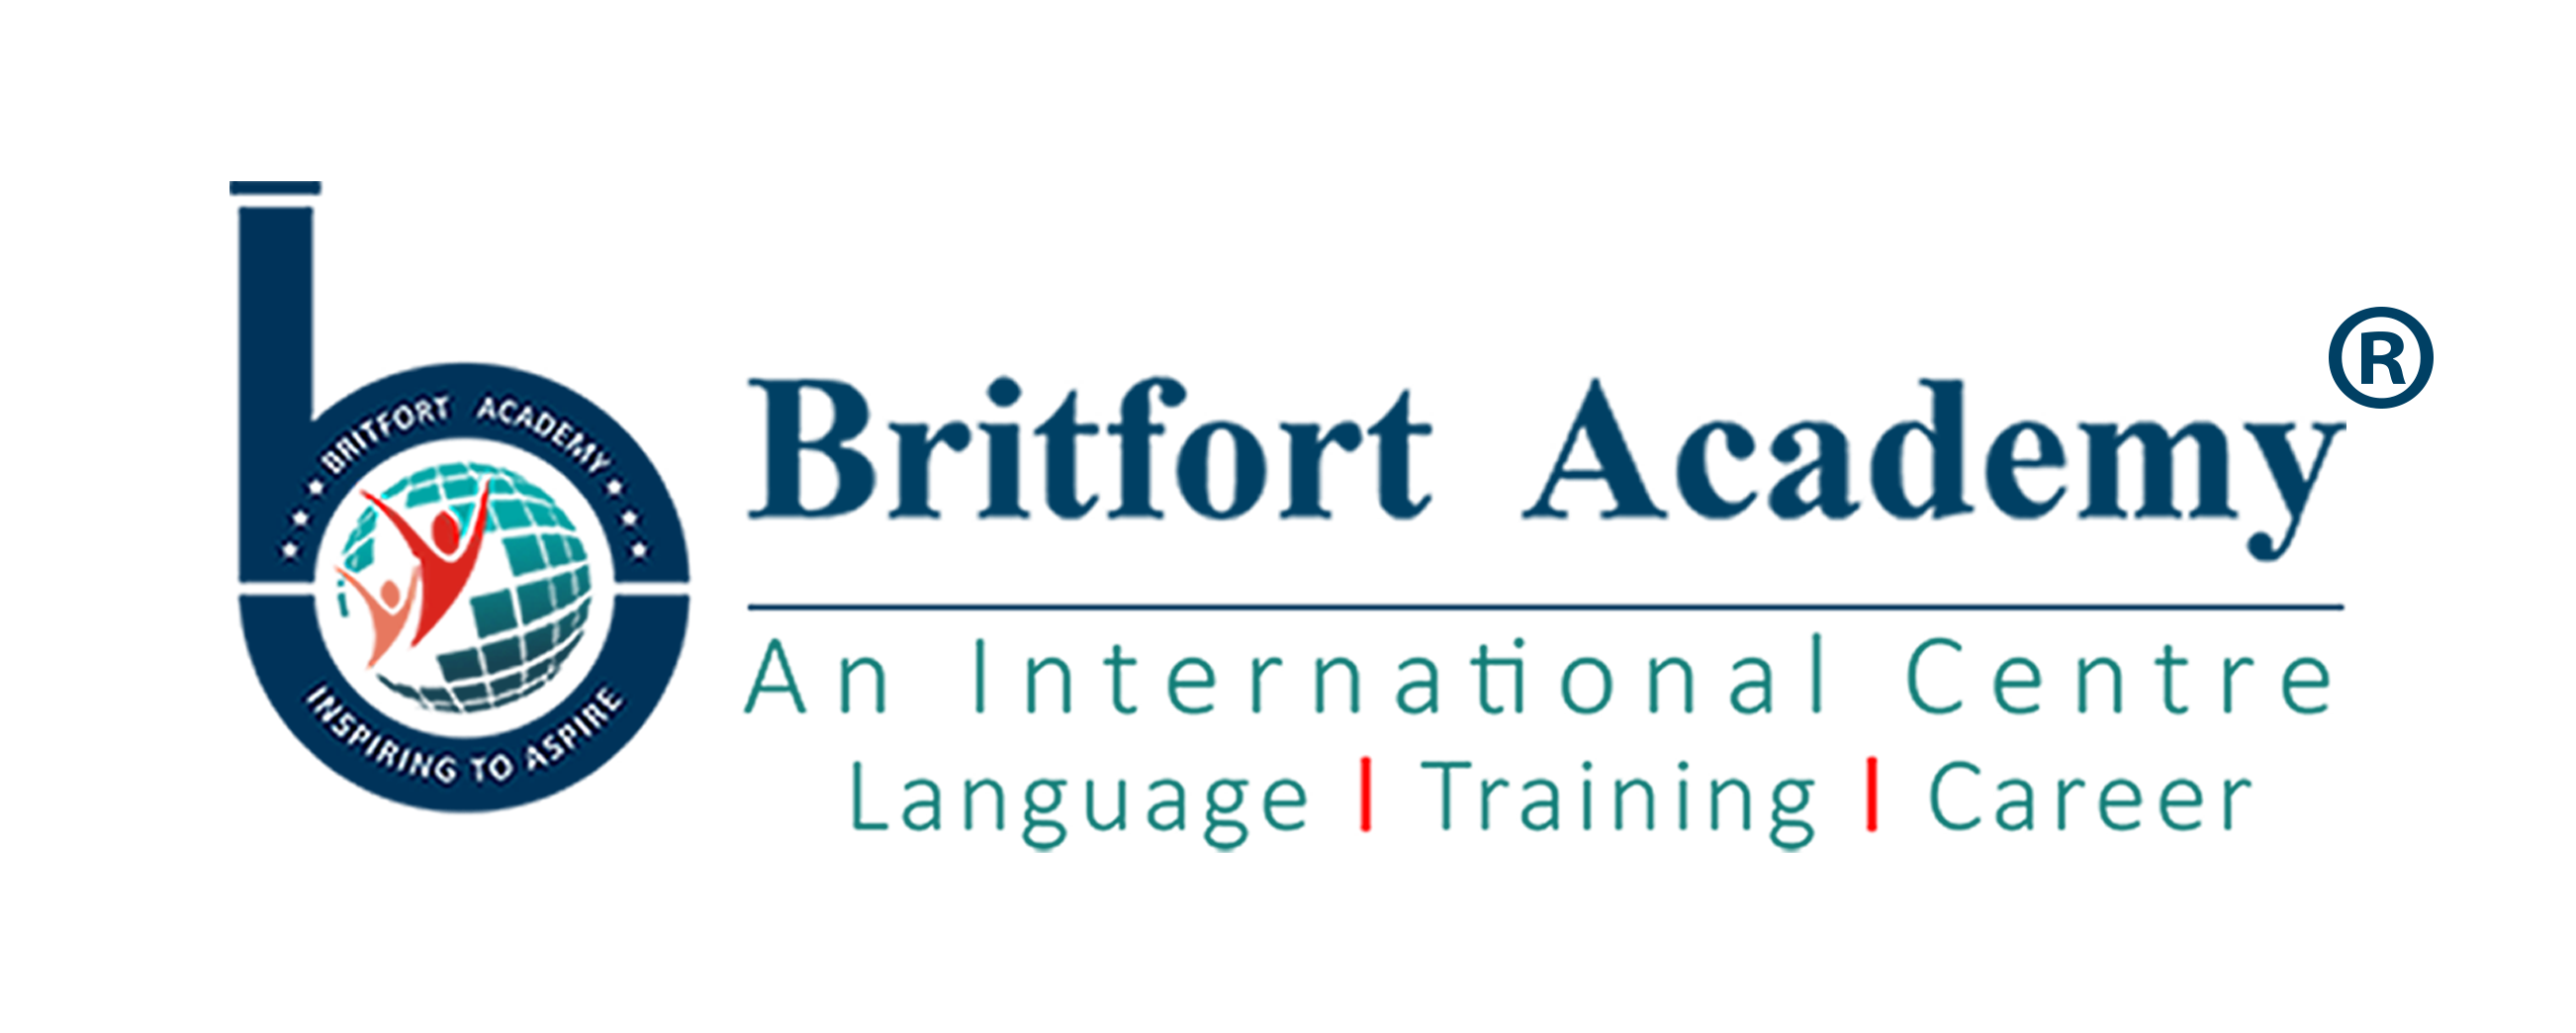 Britfort Academy